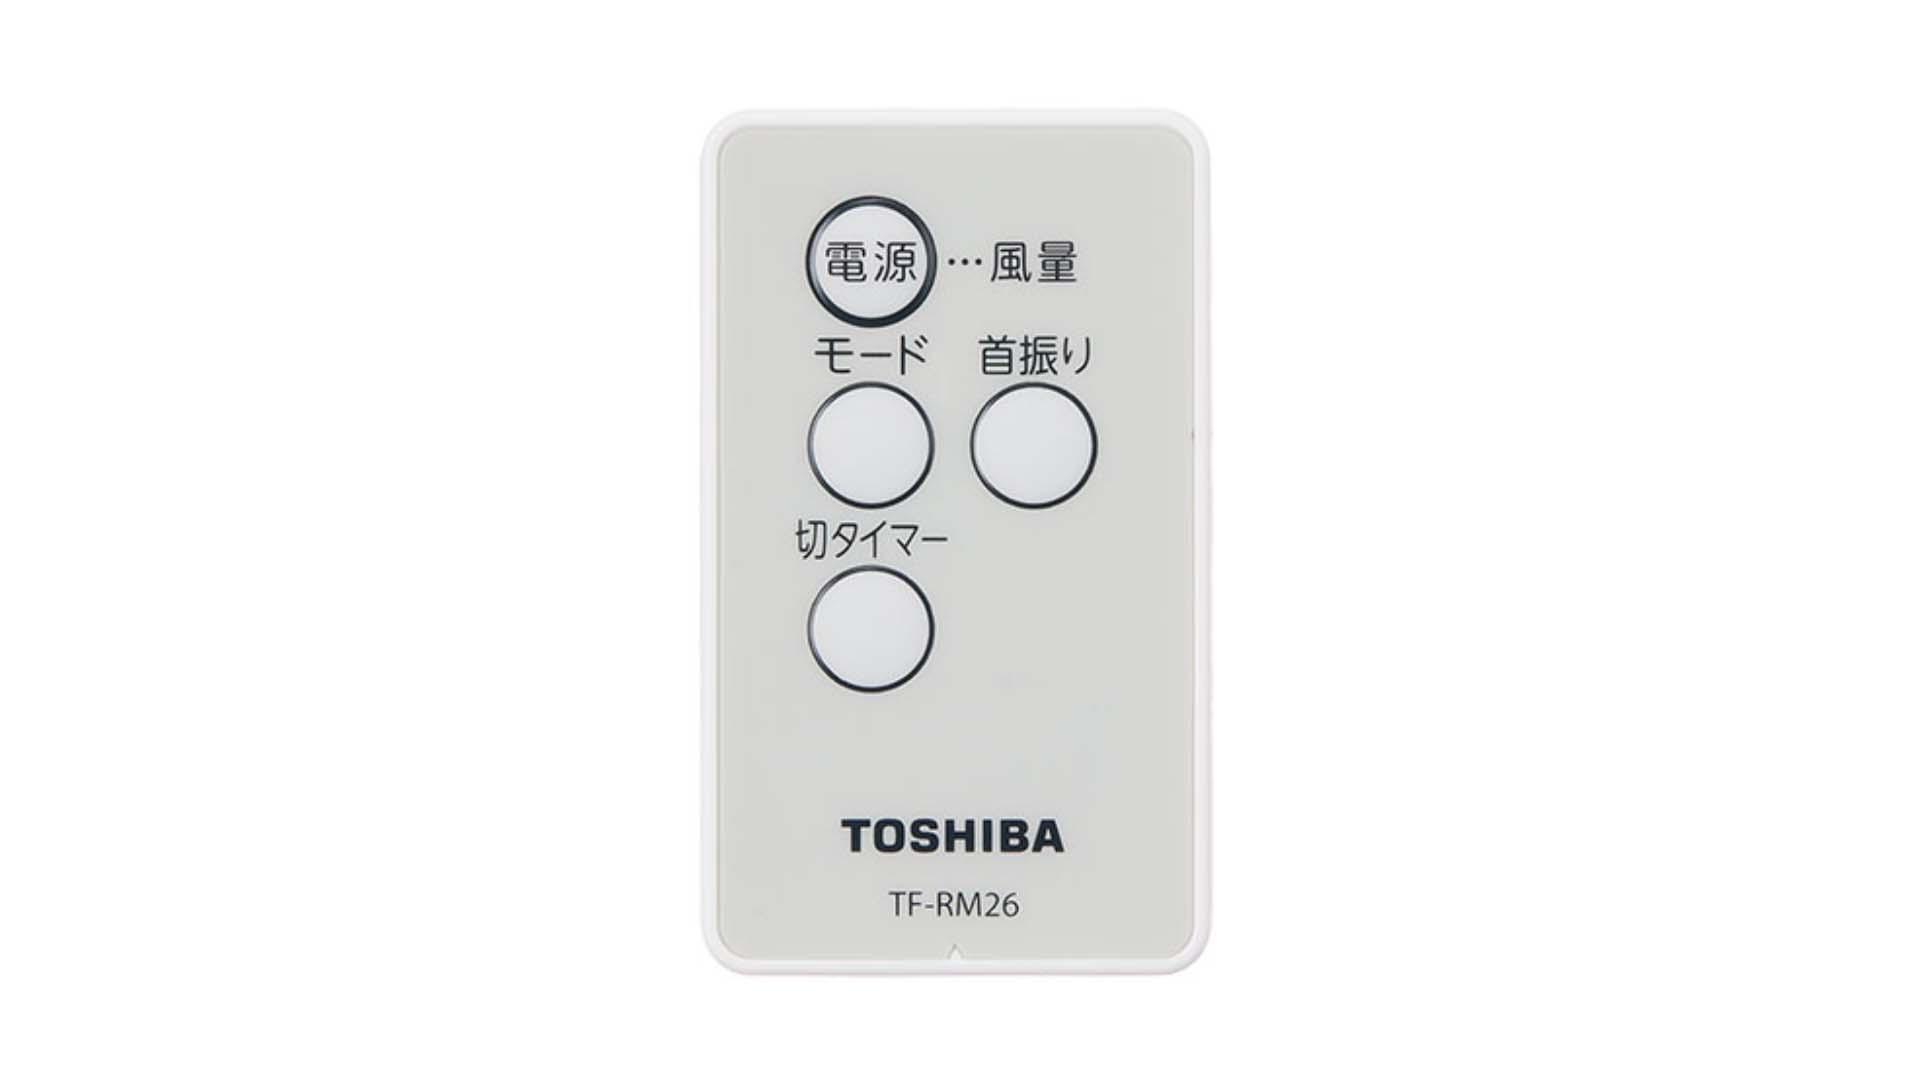 Quat-treo-tuong-Toshiba-TF-30RK26